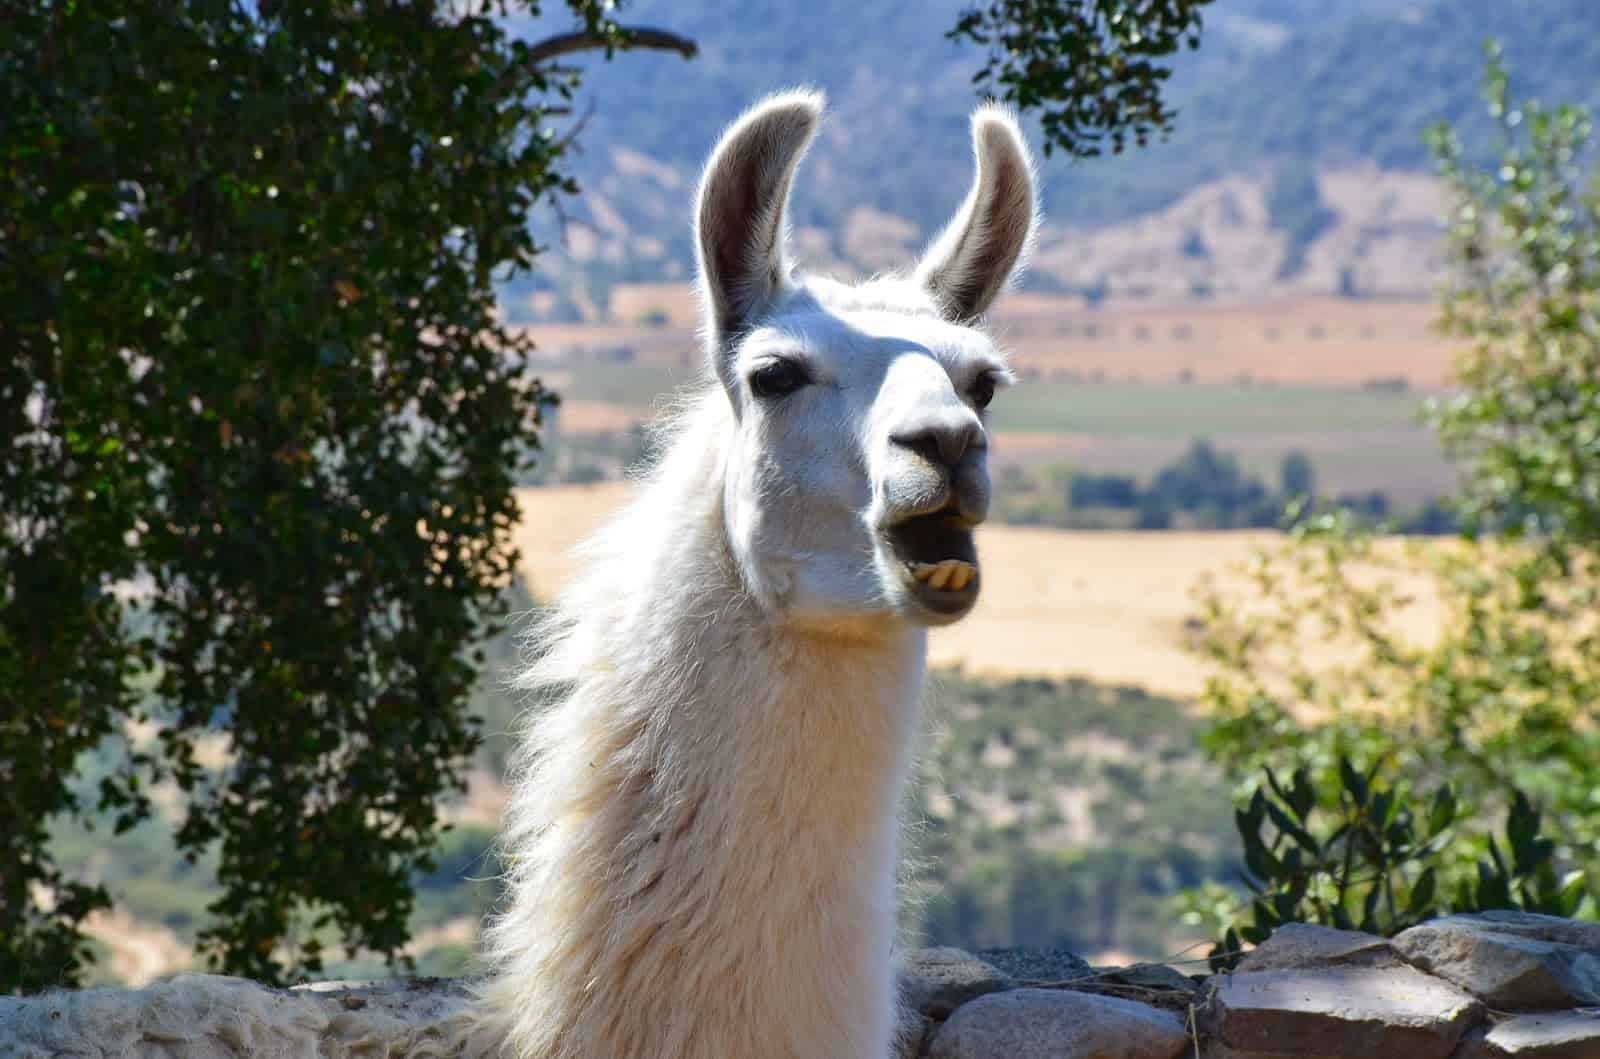 Llama at Viña Santa Cruz in Colchagua Valley, Chile